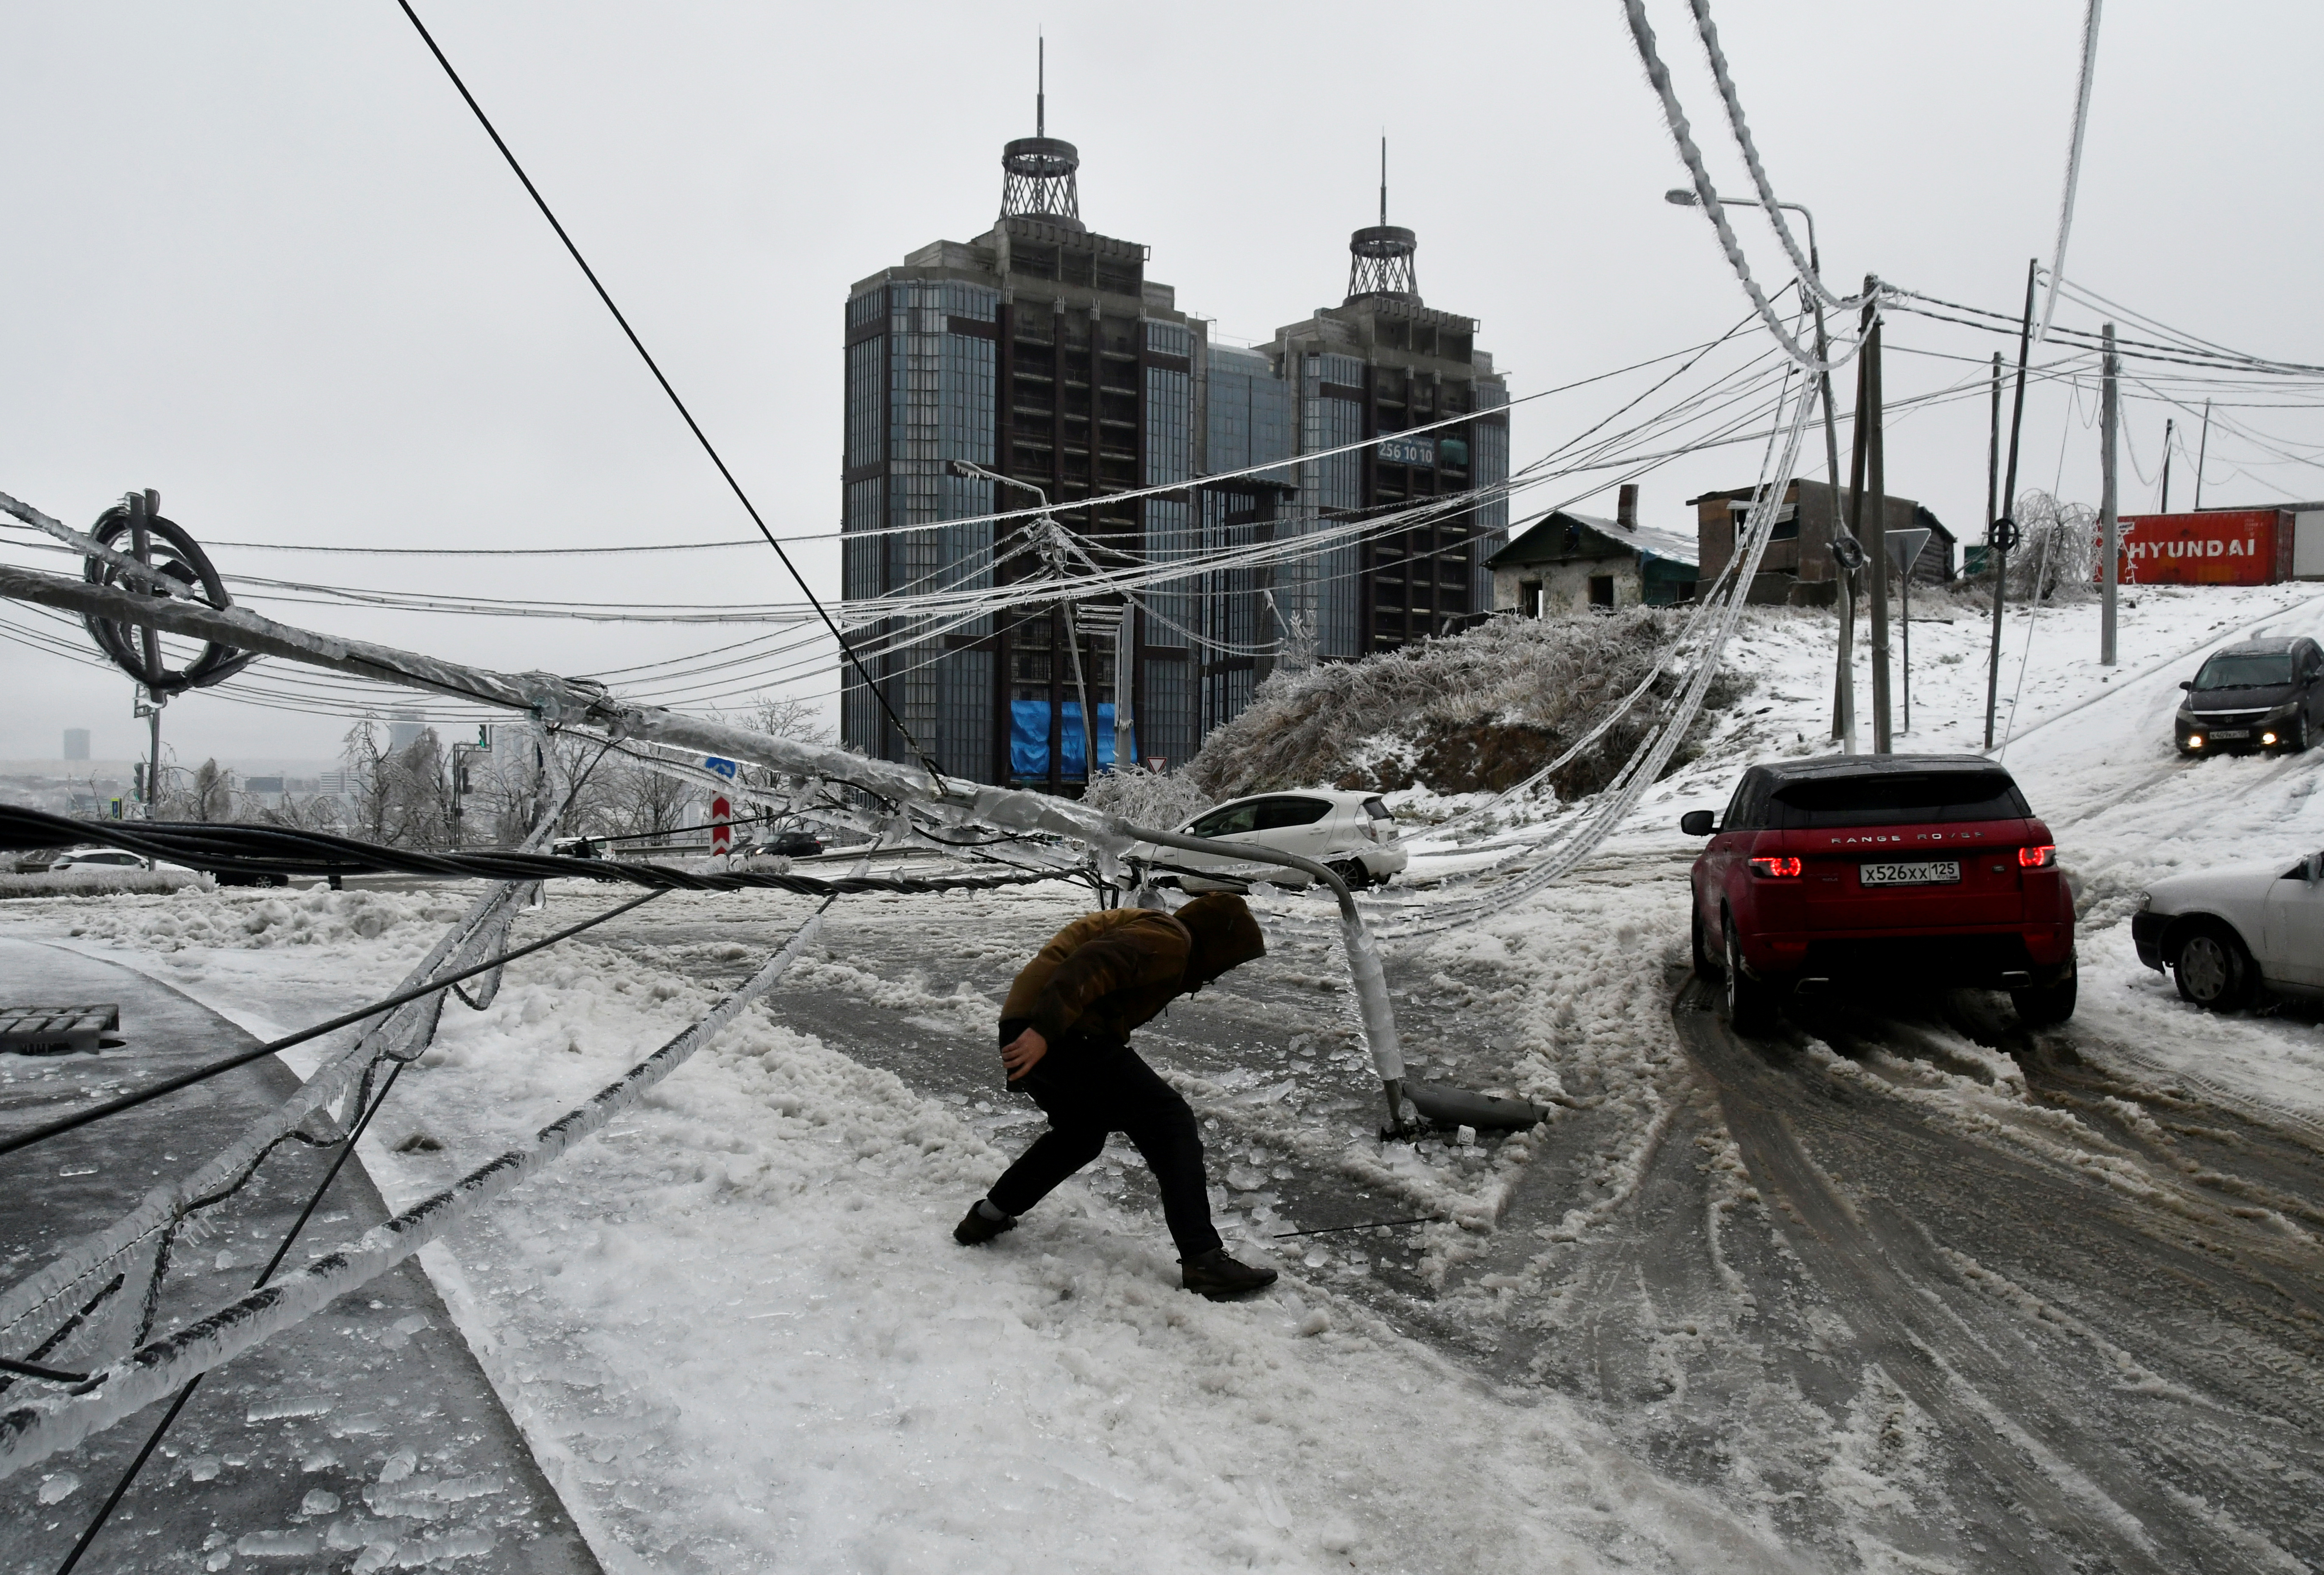 La tormenta ocasionó problemas en el sistema eléctrico de la región. (Foto: Yuri Maltsev/Reuters)